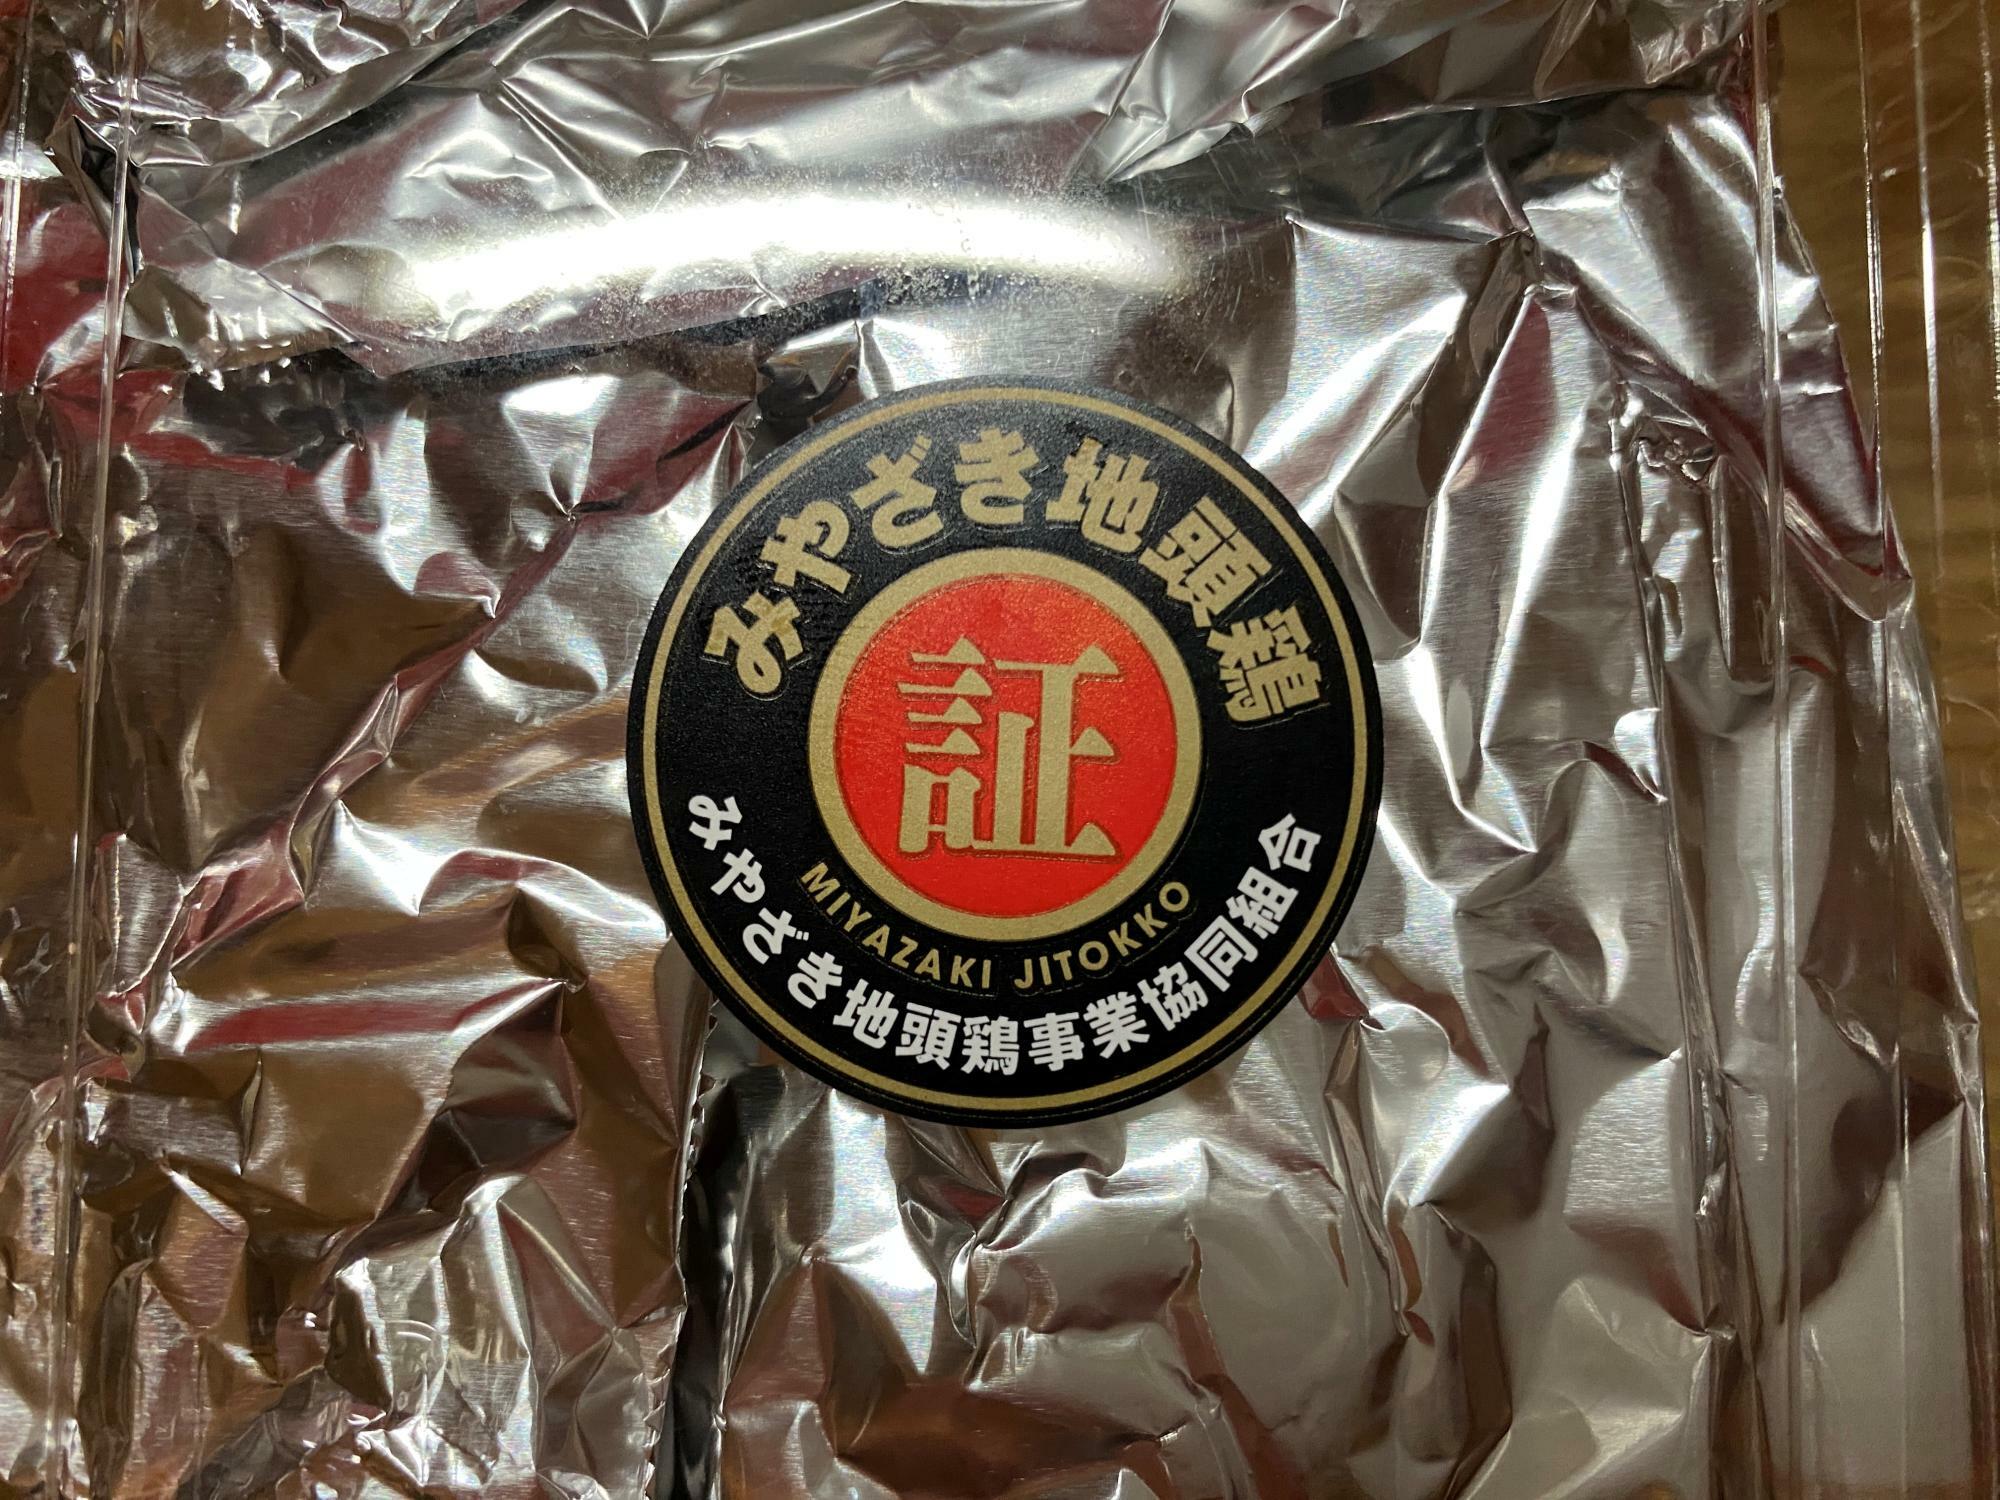 「宮崎鶏料理 賢豊（けんほう）」は、「みやざき地頭鶏（じどっこ）」を積極的に活用する飲食指定店として認定されている証です。